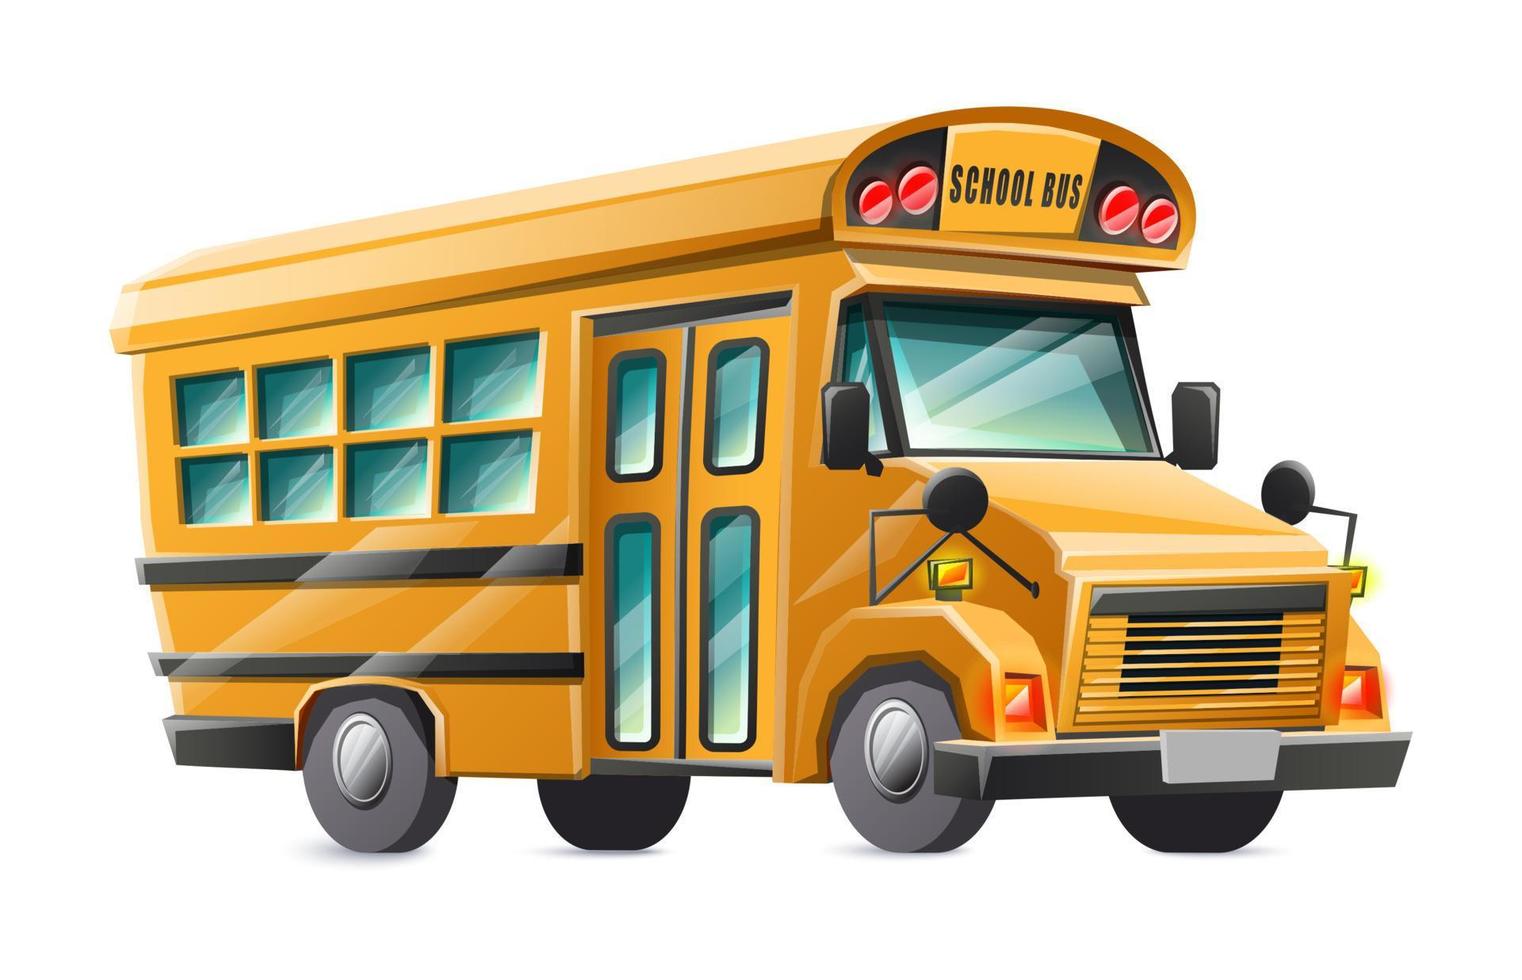 voiture d'autobus scolaire jaune de style dessin animé de vecteur, isolée sur fond blanc. vecteur